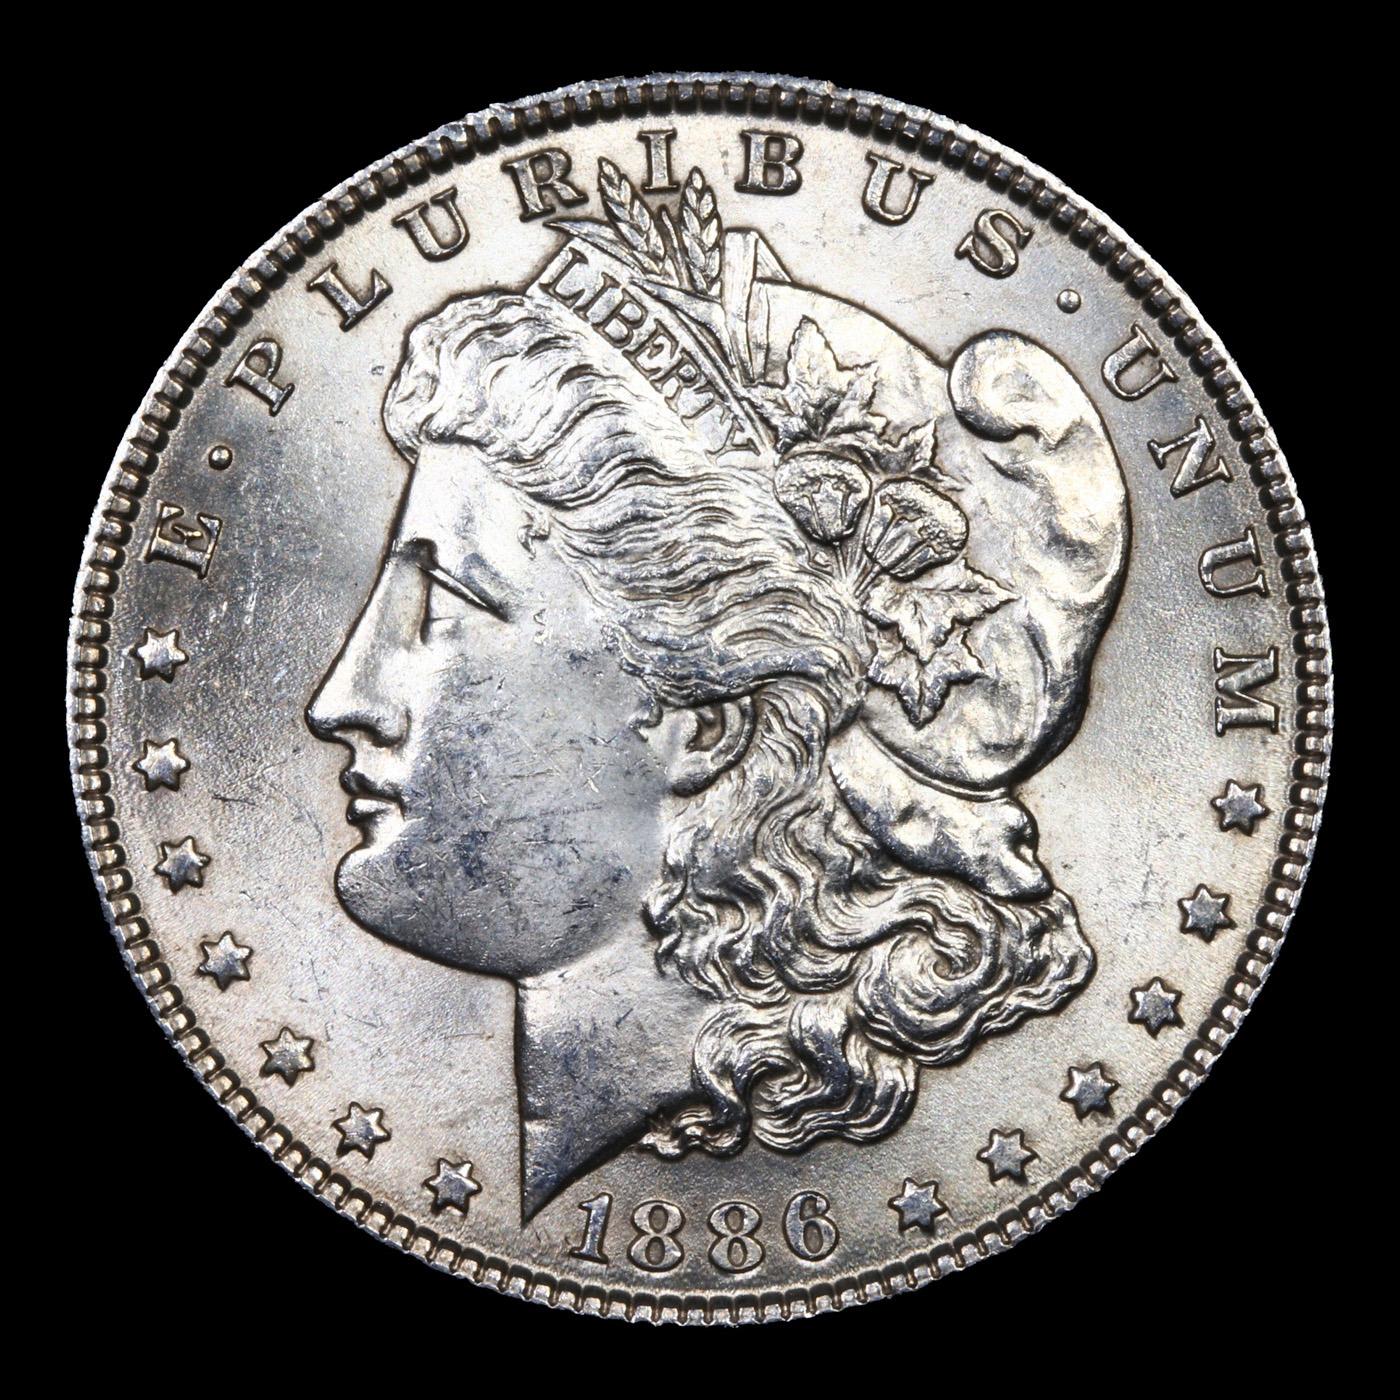 1886-p Morgan Dollar $1 Grades GEM Unc